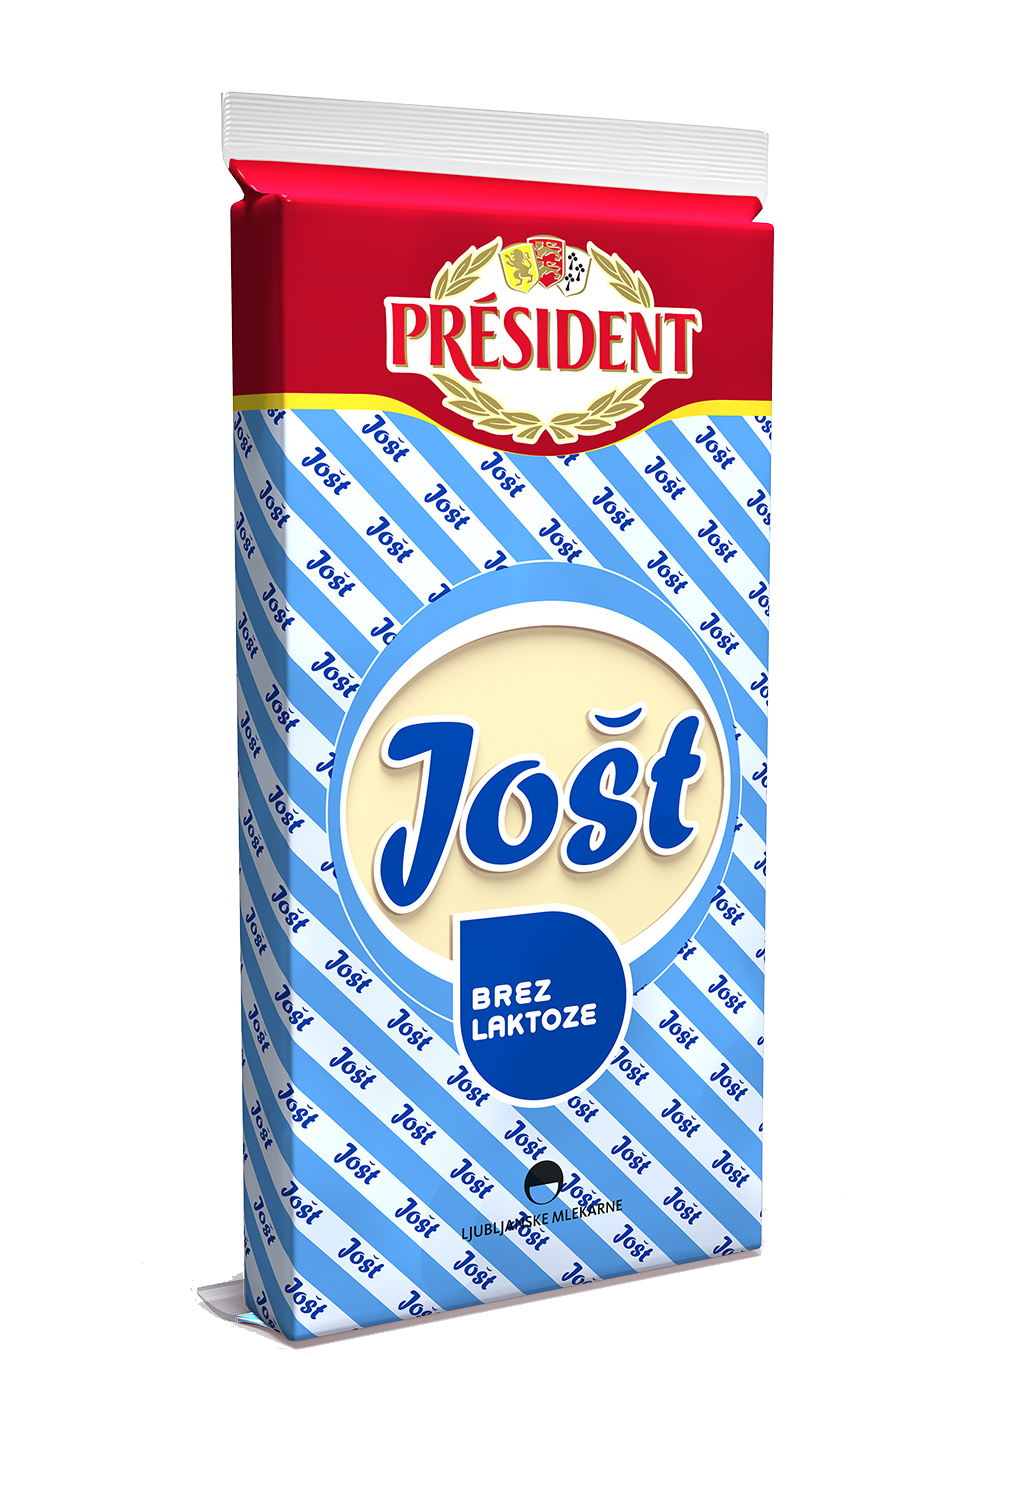 Président Jošt poltrdi polnomastni sir brez laktoze